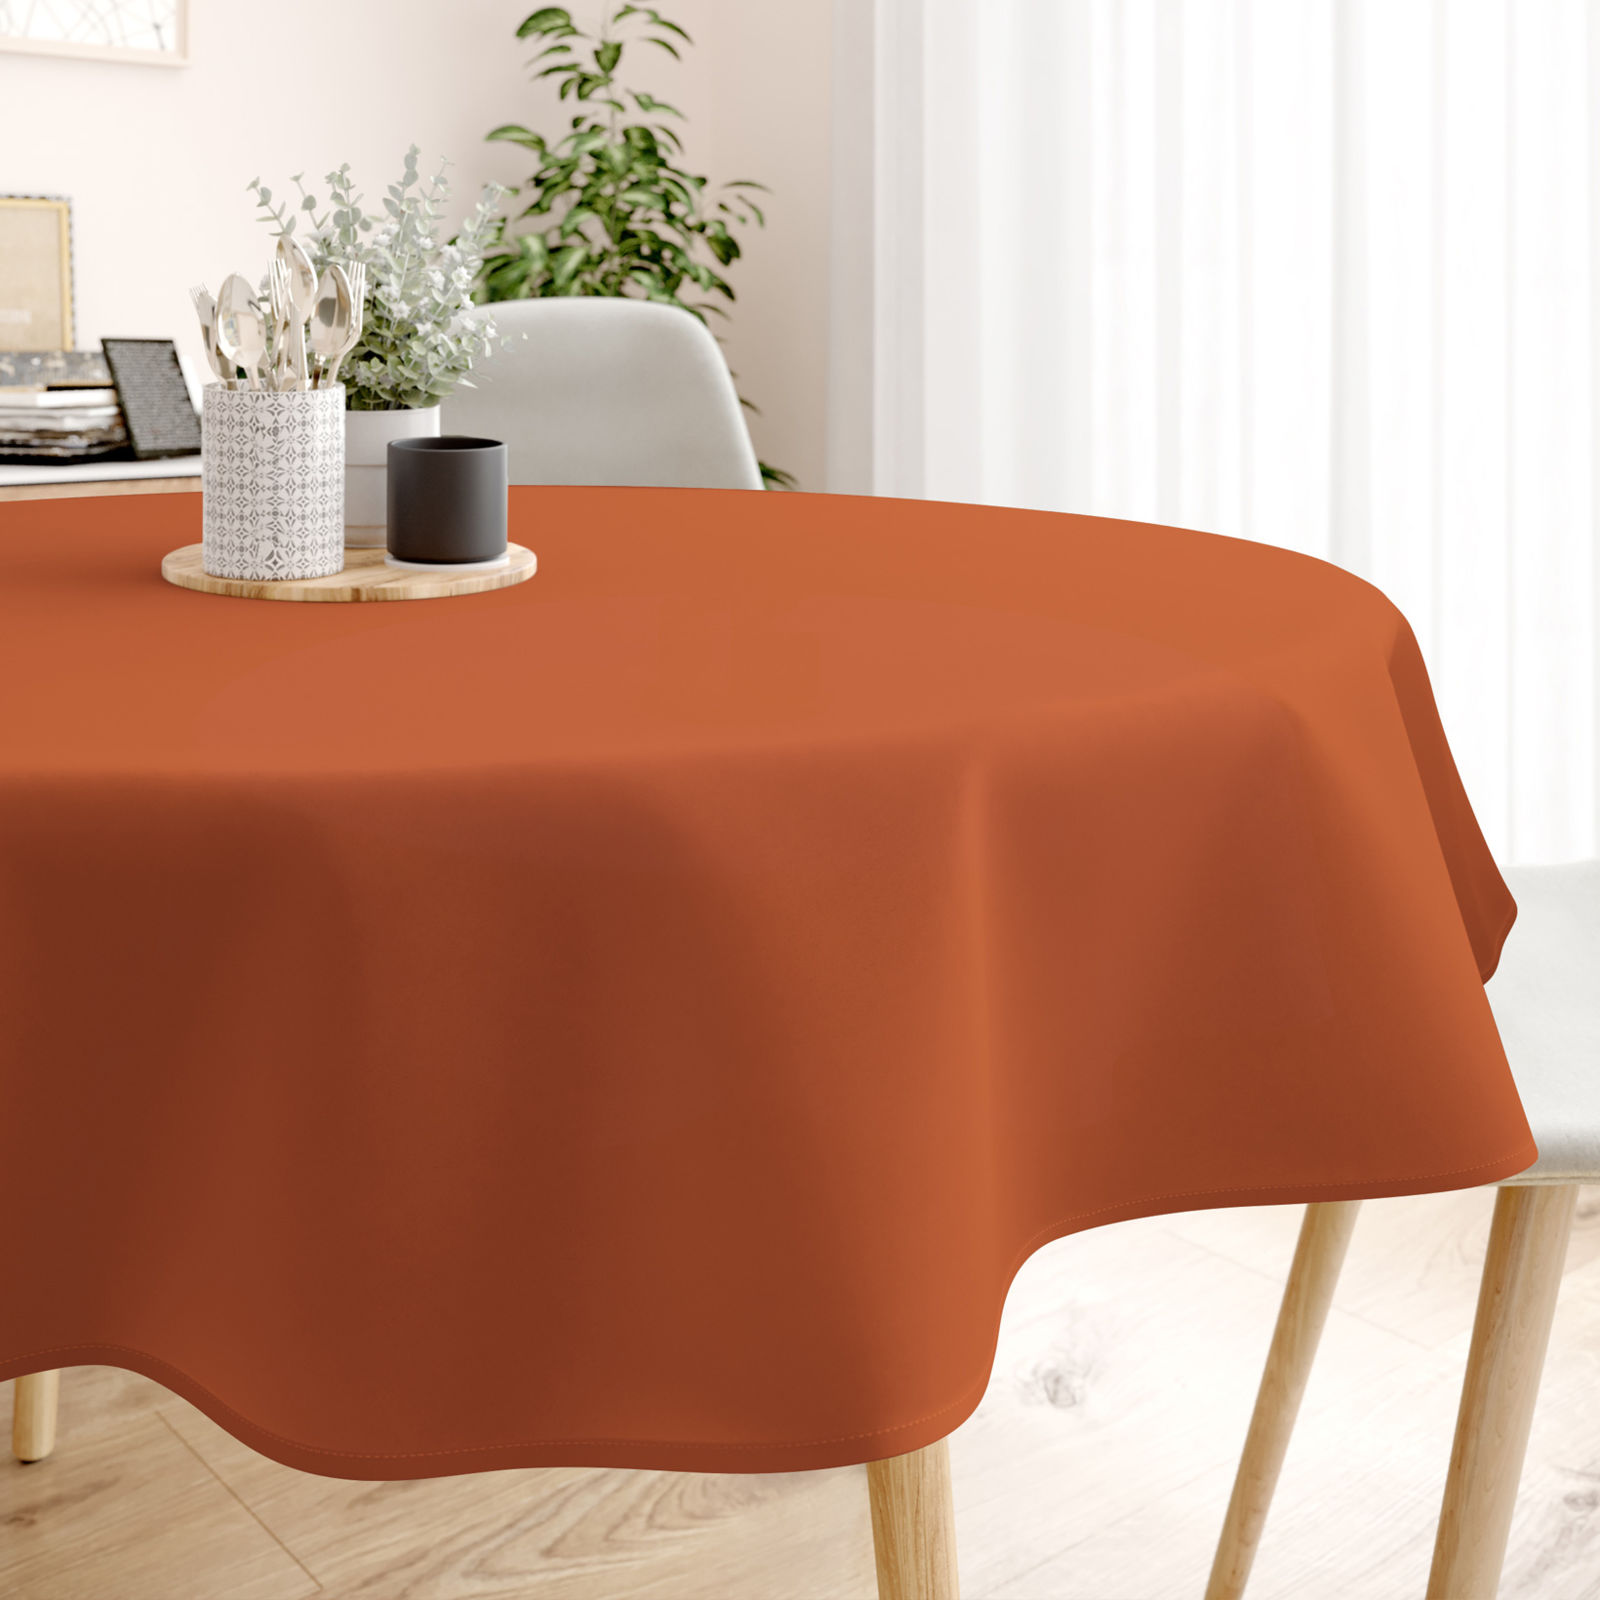 Pamut asztalterítő - tégla színű - kör alakú